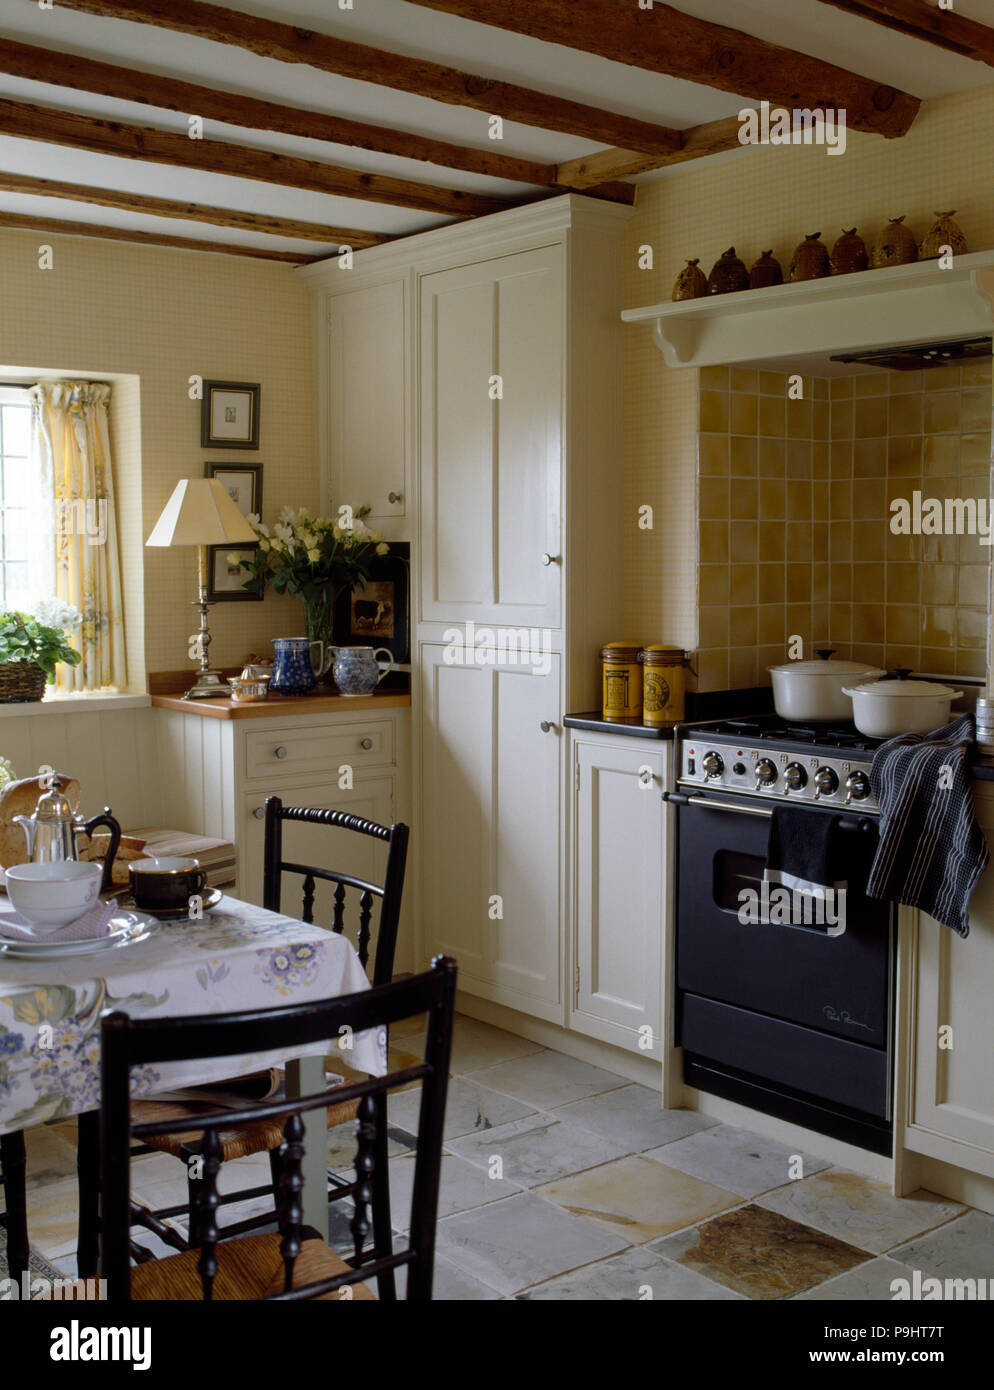 Angebot Backofen in einer Creme Land Küche mit bemalten Stühle Tisch für  Frühstück Stockfotografie - Alamy